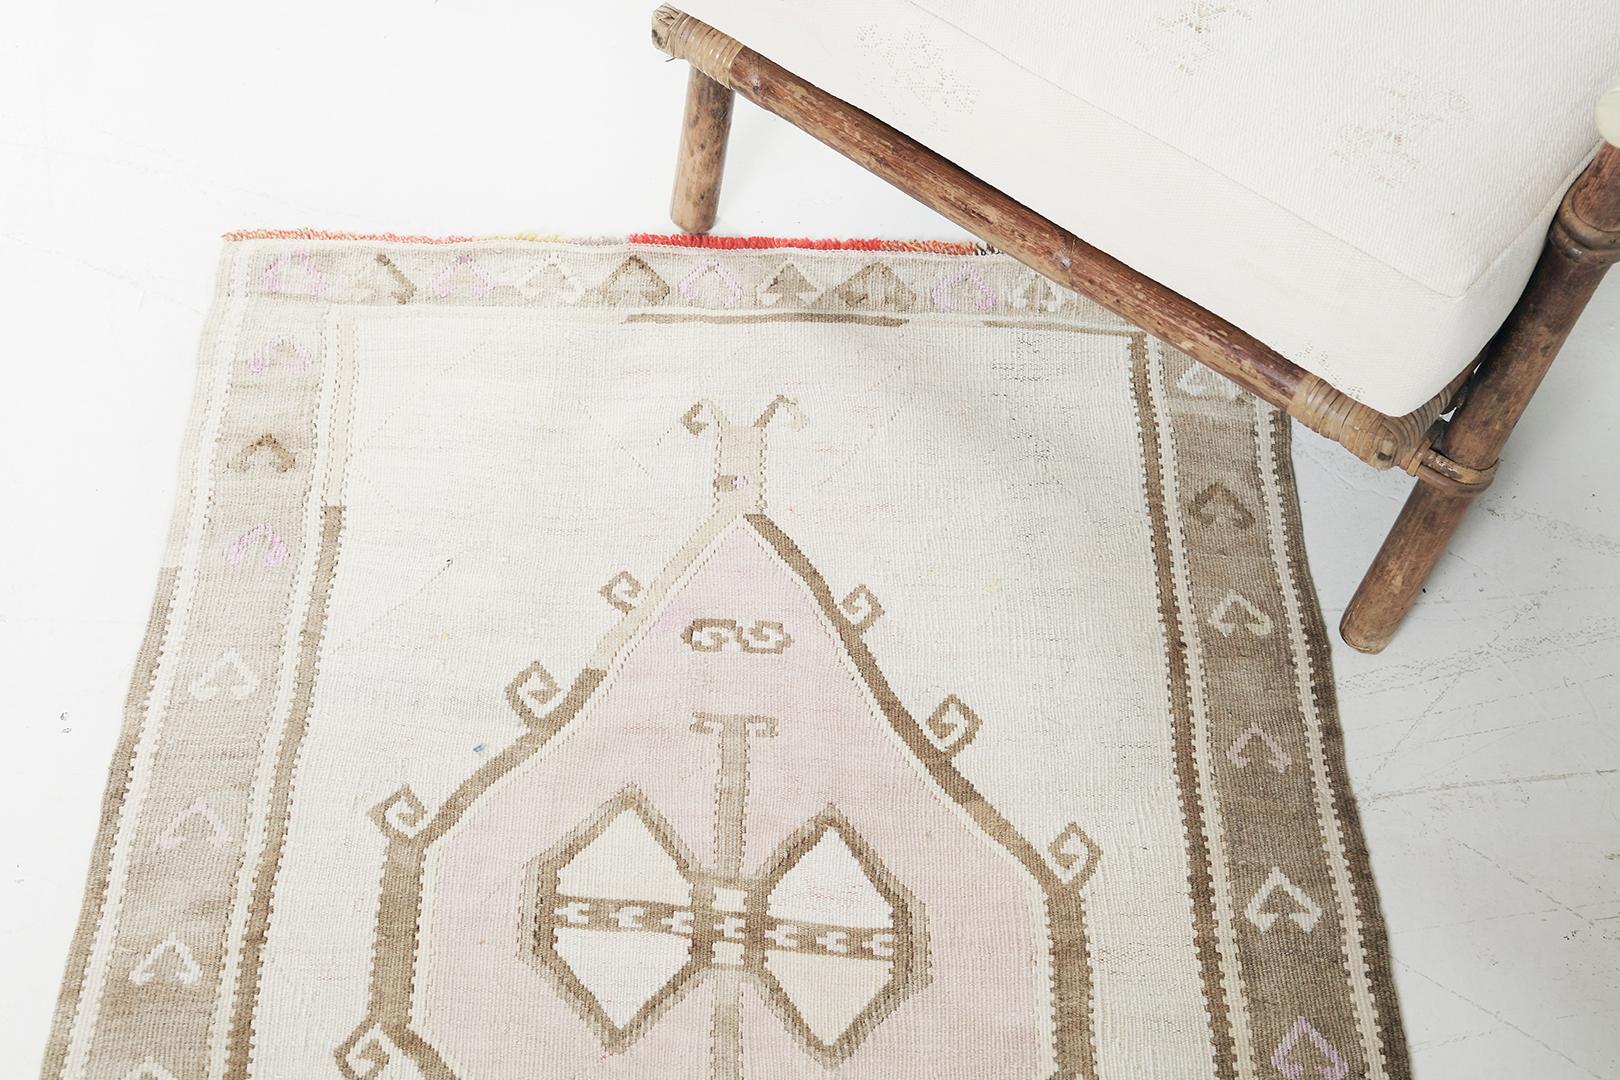 Dieser erstaunliche türkische Kars-Kelim-Teppich, der die atemberaubende minimalistische Kunstform offenbart, wird jeden Betrachter definitiv fesseln, wenn Sie seine Augen auf diesen Vintage-Teppich legen. Mit seinem erdigen Farbschema in Elfenbein